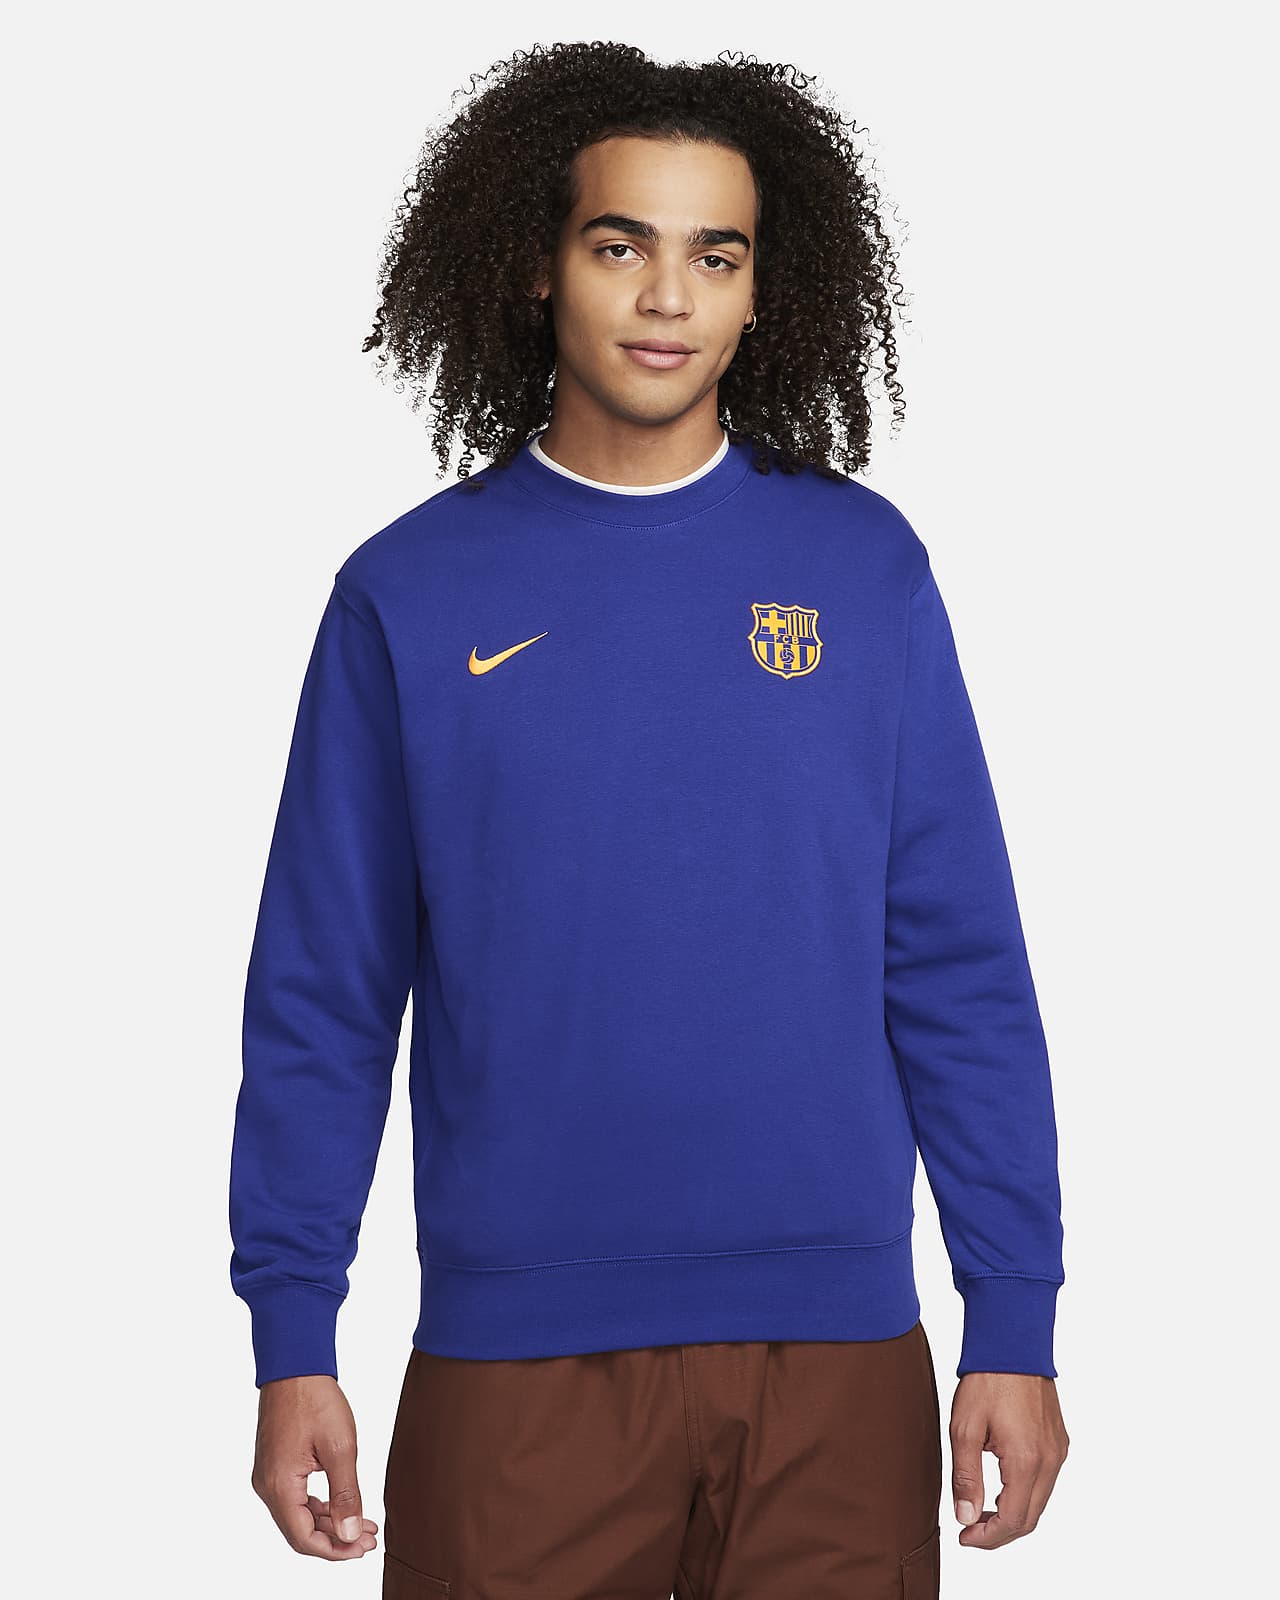 Sweat-shirt de foot ras-du-cou Nike FC Barcelona Club pour homme